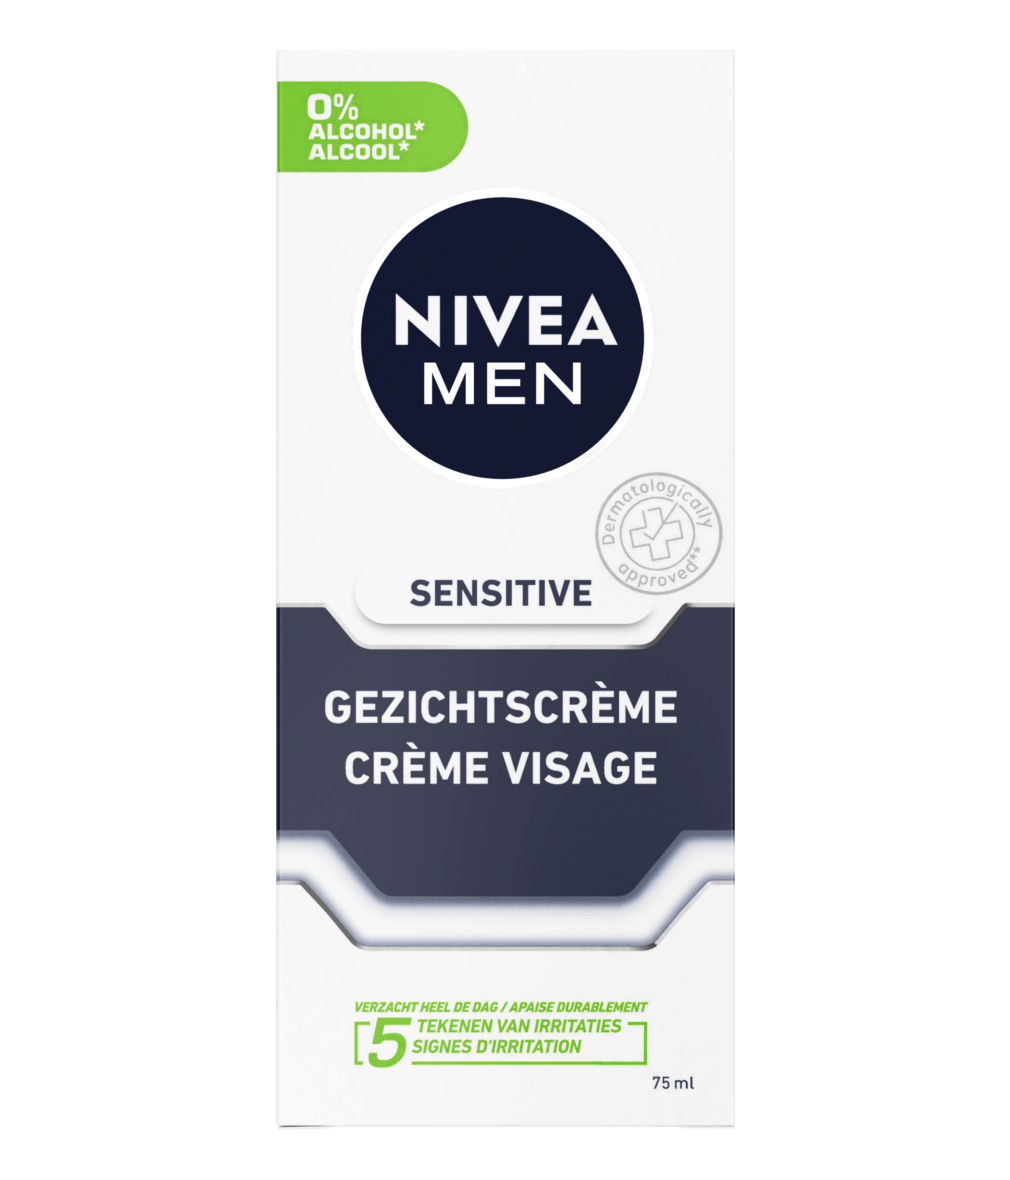 Medaille als resultaat Helderheid Sensitive Gezichtscrème – Directe verlichting – NIVEA MEN